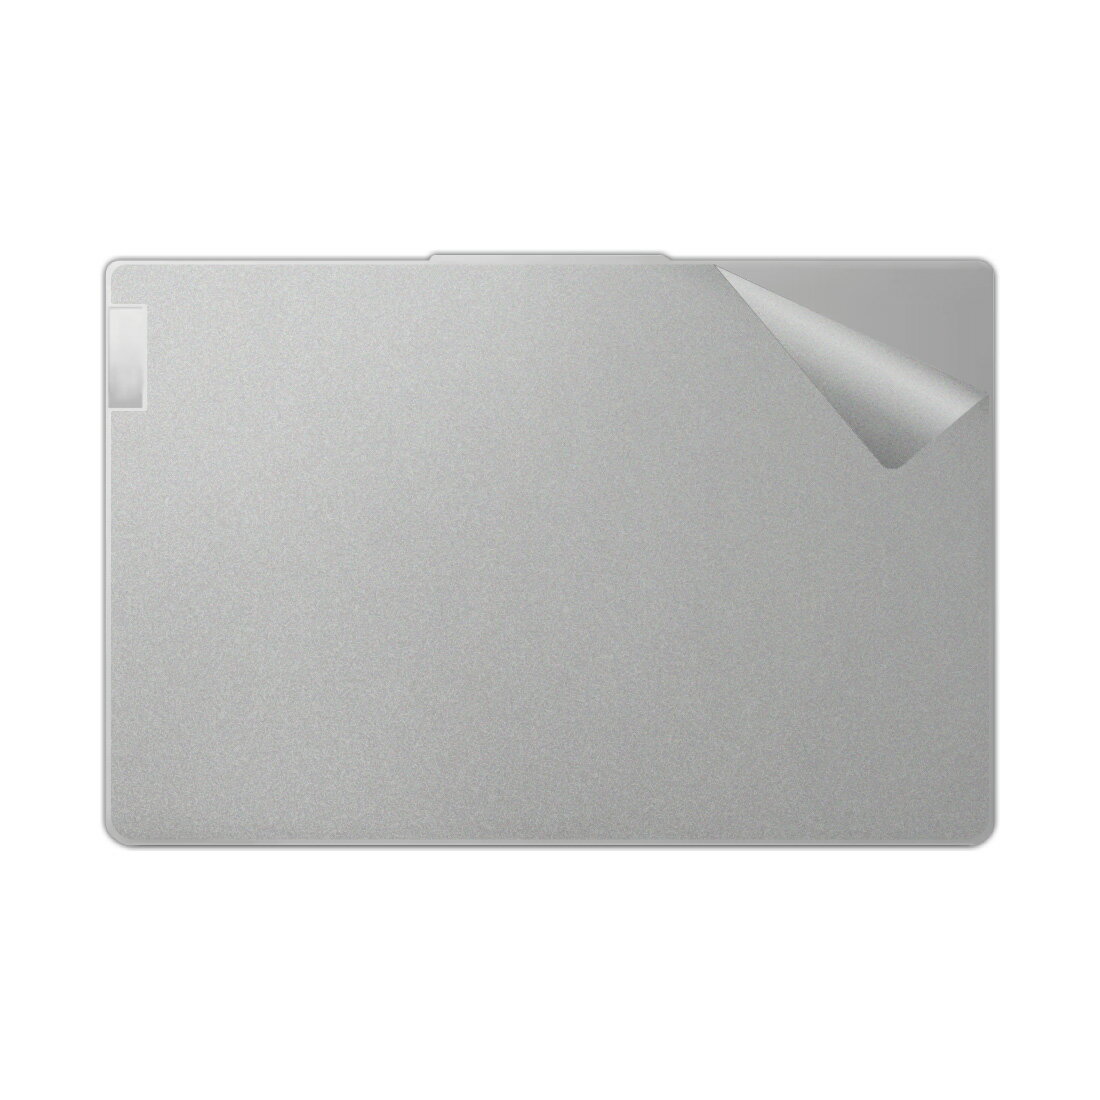 スキンシール Lenovo IdeaPad Slim 5 Light Gen 8 (14型) 【透明・すりガラス調】 日本製 自社製造直販